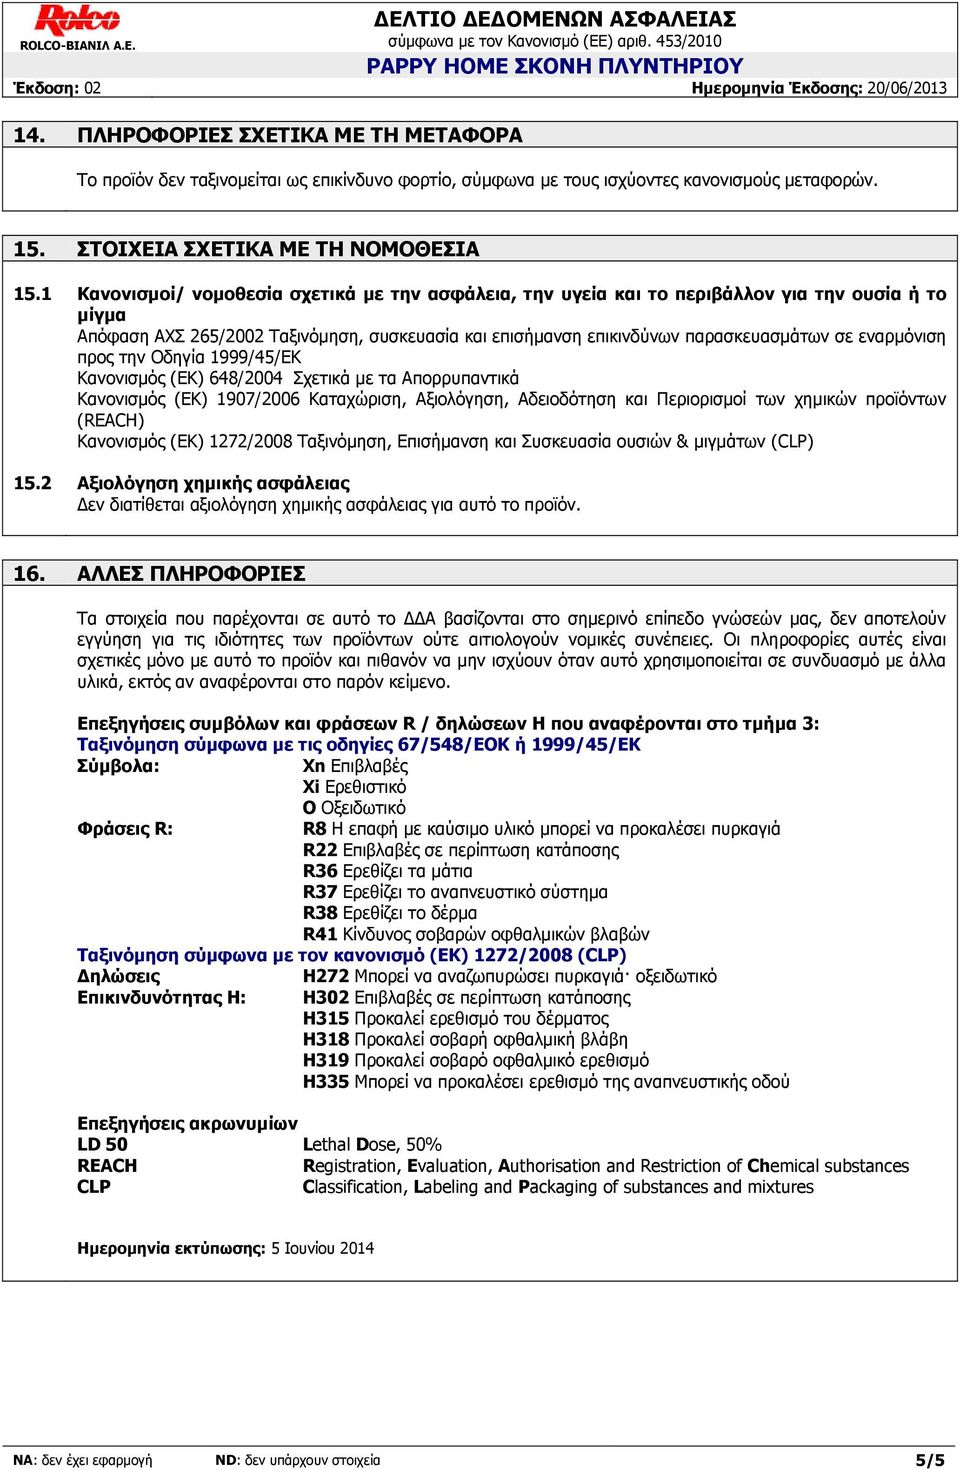 εναρμόνιση προς την Οδηγία 1999/45/ΕΚ Κανονισμός (ΕΚ) 648/2004 Σχετικά με τα Απορρυπαντικά Κανονισμός (ΕΚ) 1907/2006 Καταχώριση, Αξιολόγηση, Αδειοδότηση και Περιορισμοί των χημικών προϊόντων (REACH)